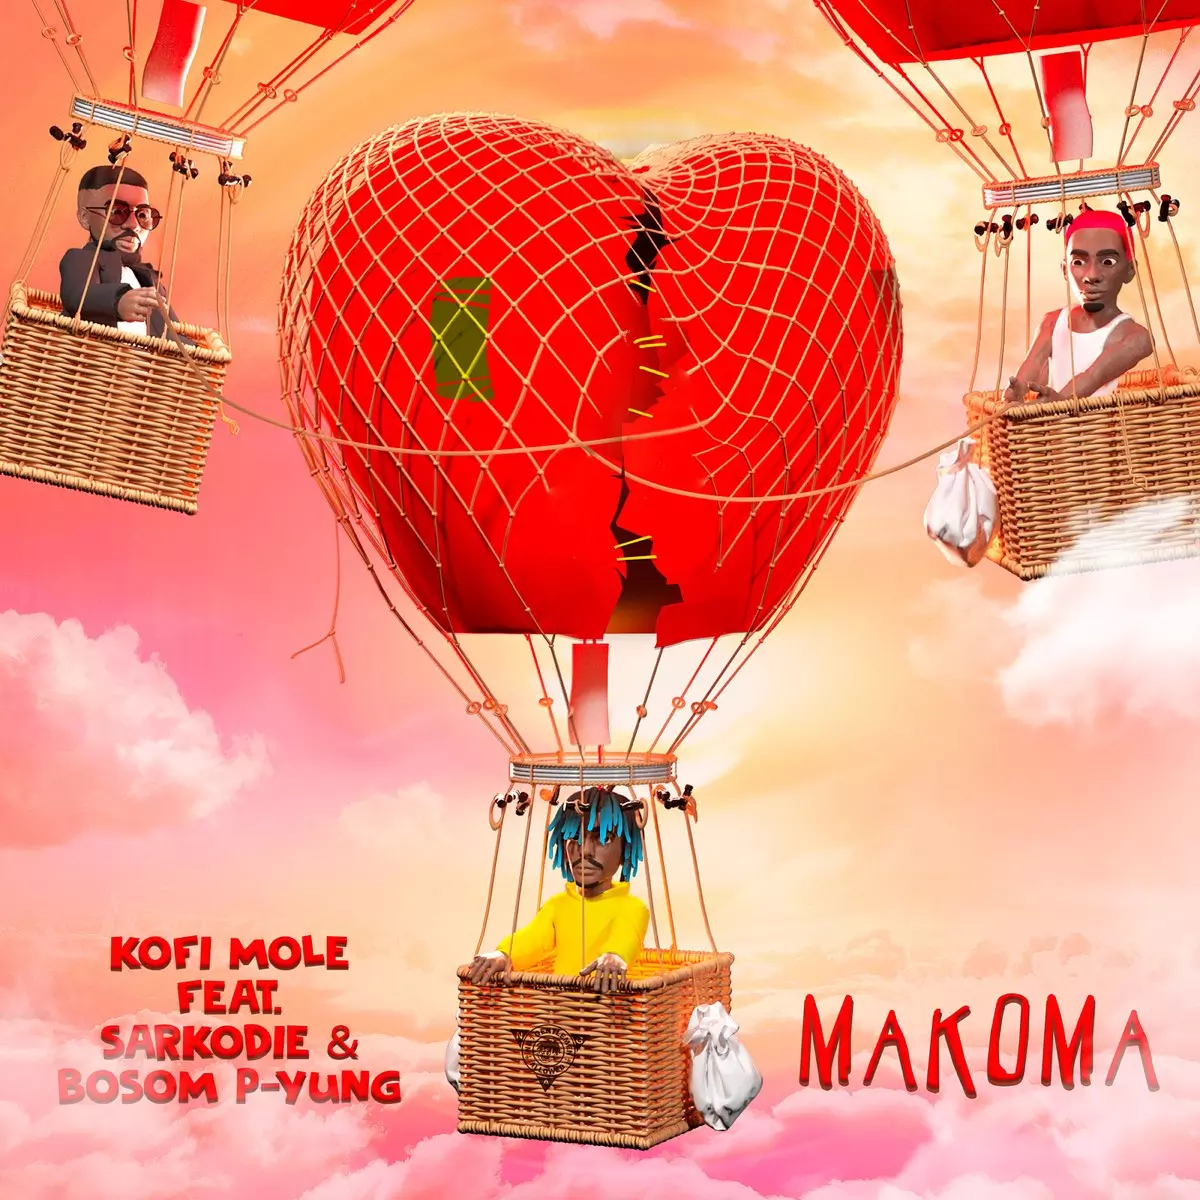 Makoma (feat. Sarkodie & Bosom P-Yung) - Single by Kofi Mole on Apple Music